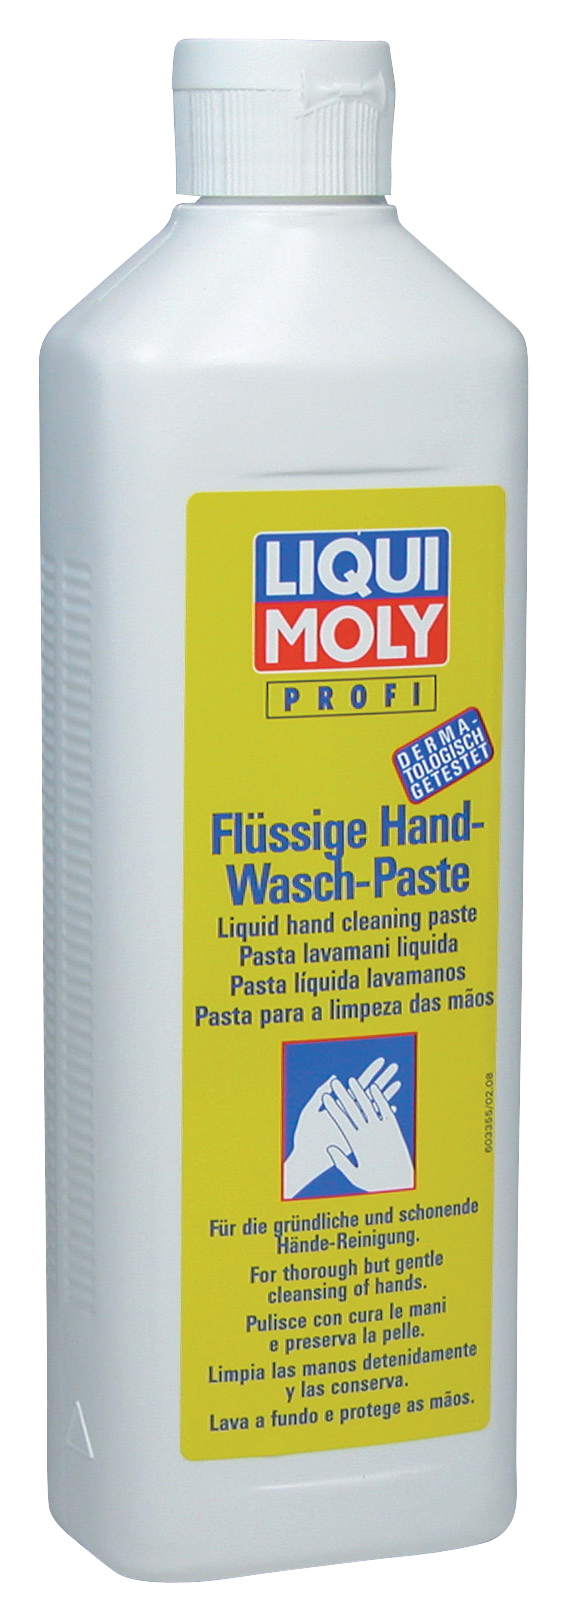 Паста для очистки рук (жидкая) Flussige Hand-Wasch-Paste, 500мл - Liqui Moly 3355